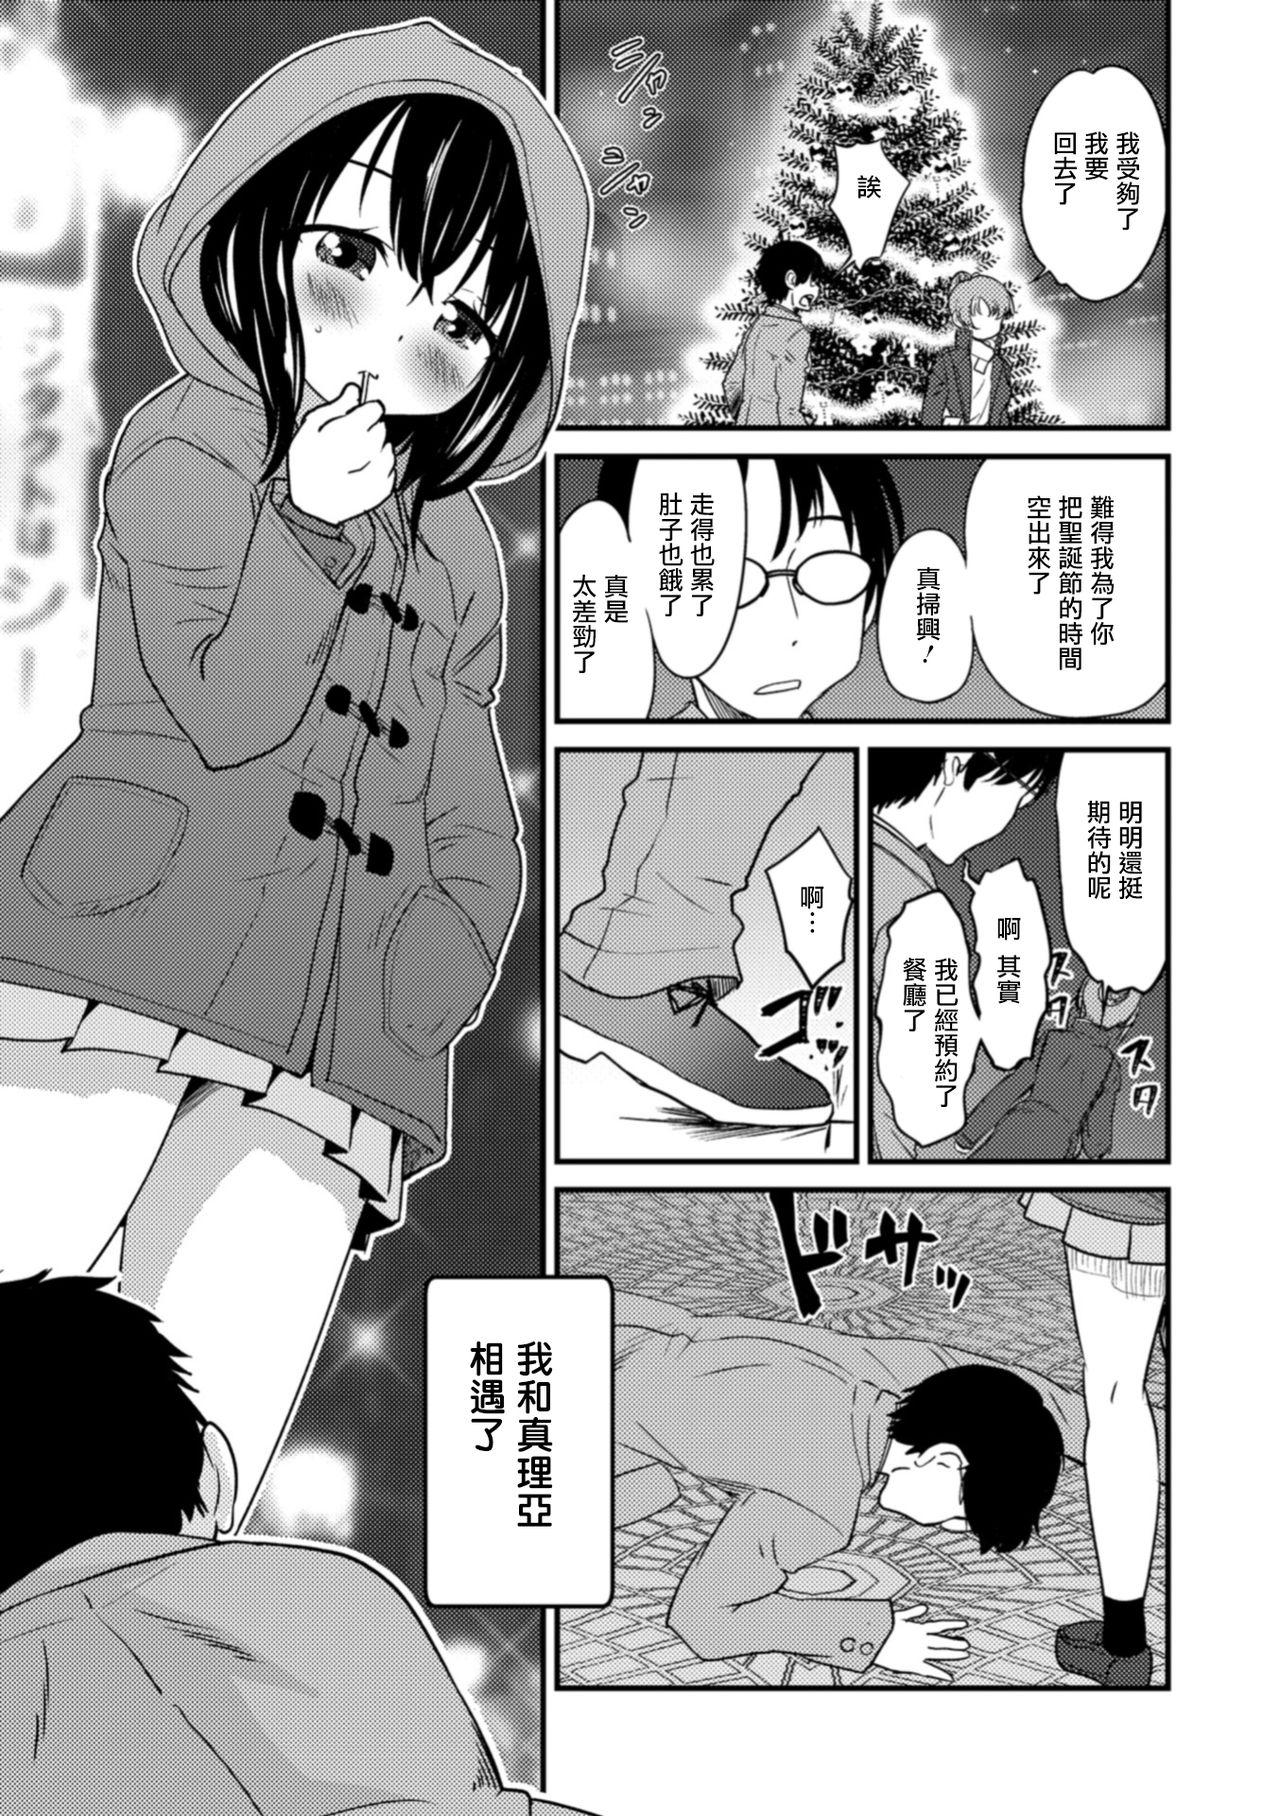 Behind Sei naru Yoru ni Tenshi to Au Mamadas - Page 5